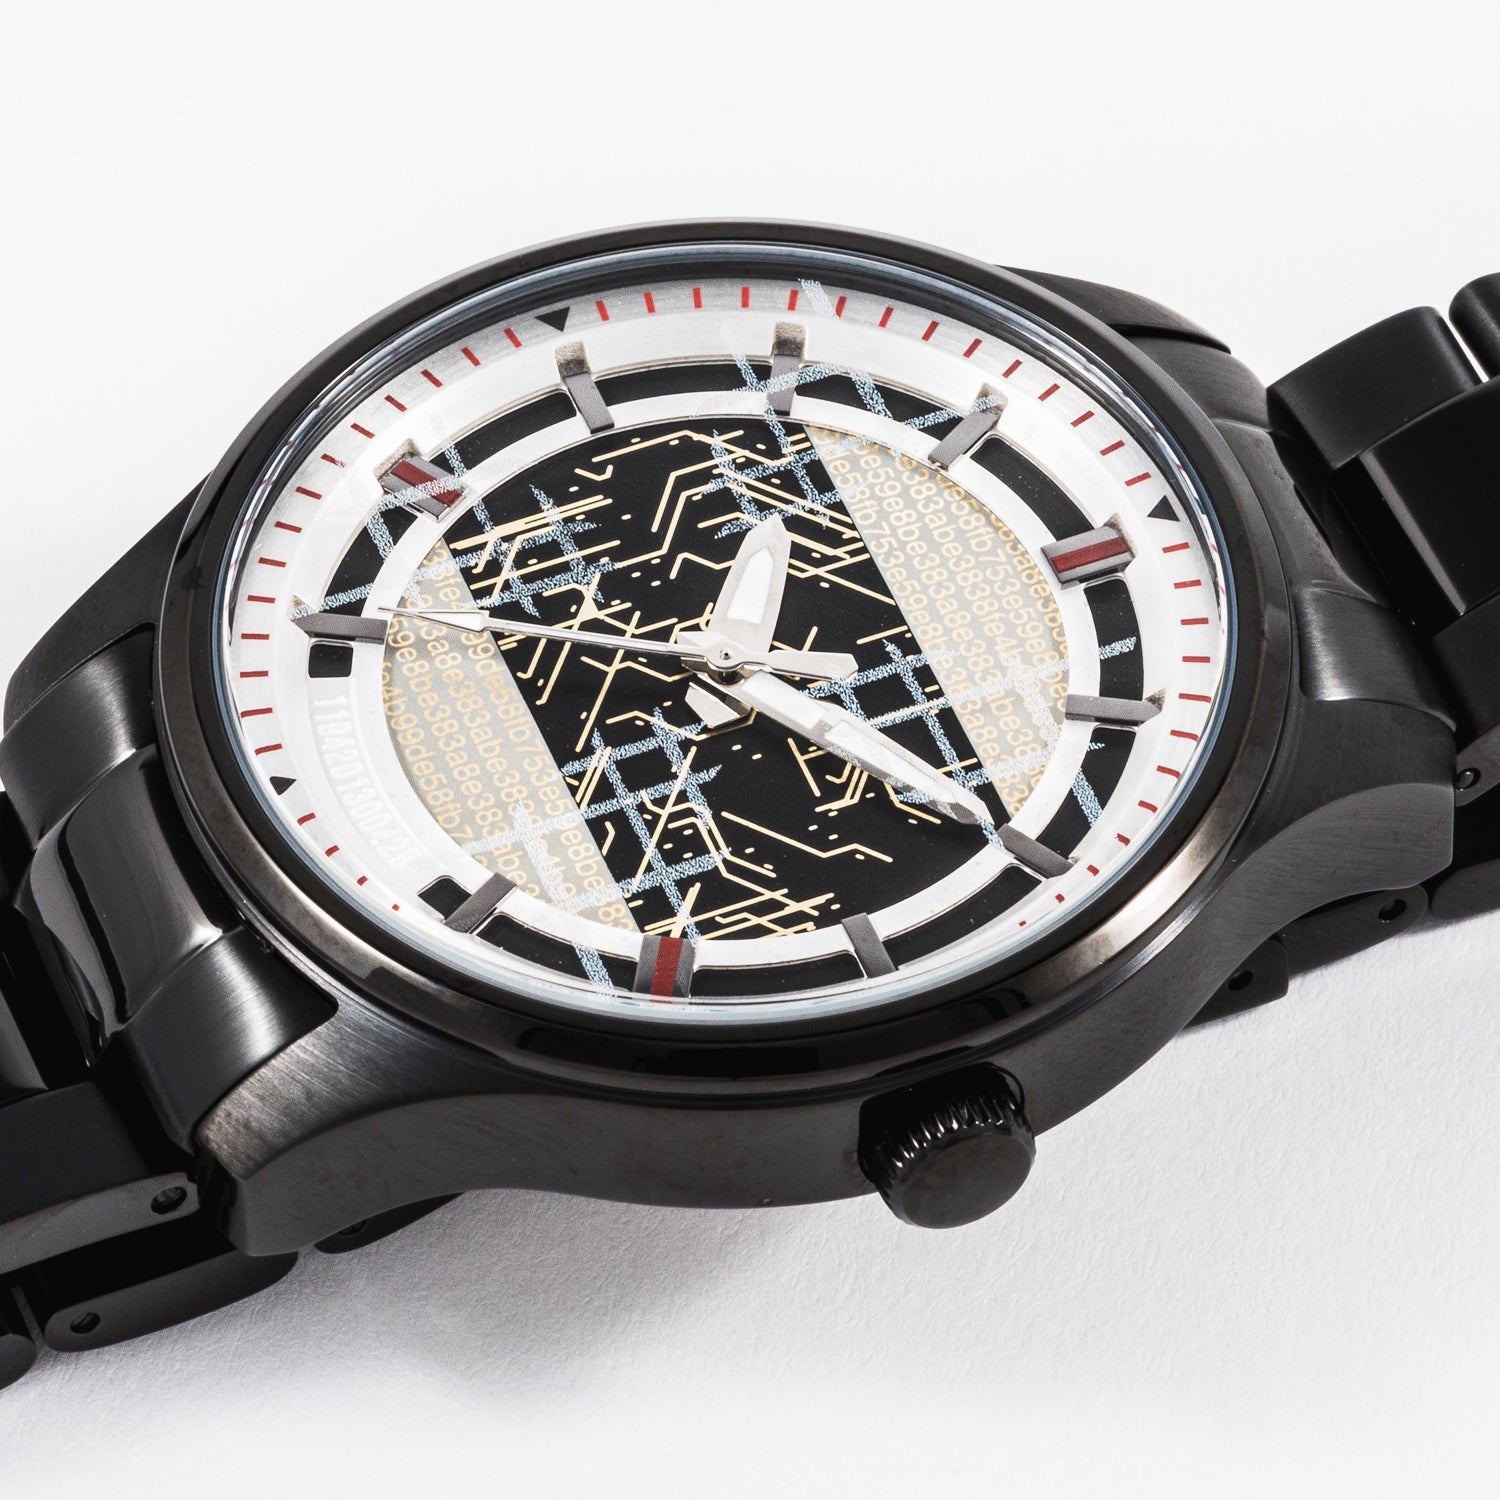 9S(ヨルハ九号S型) モデル 腕時計 NieR:Automata Ver1.1a